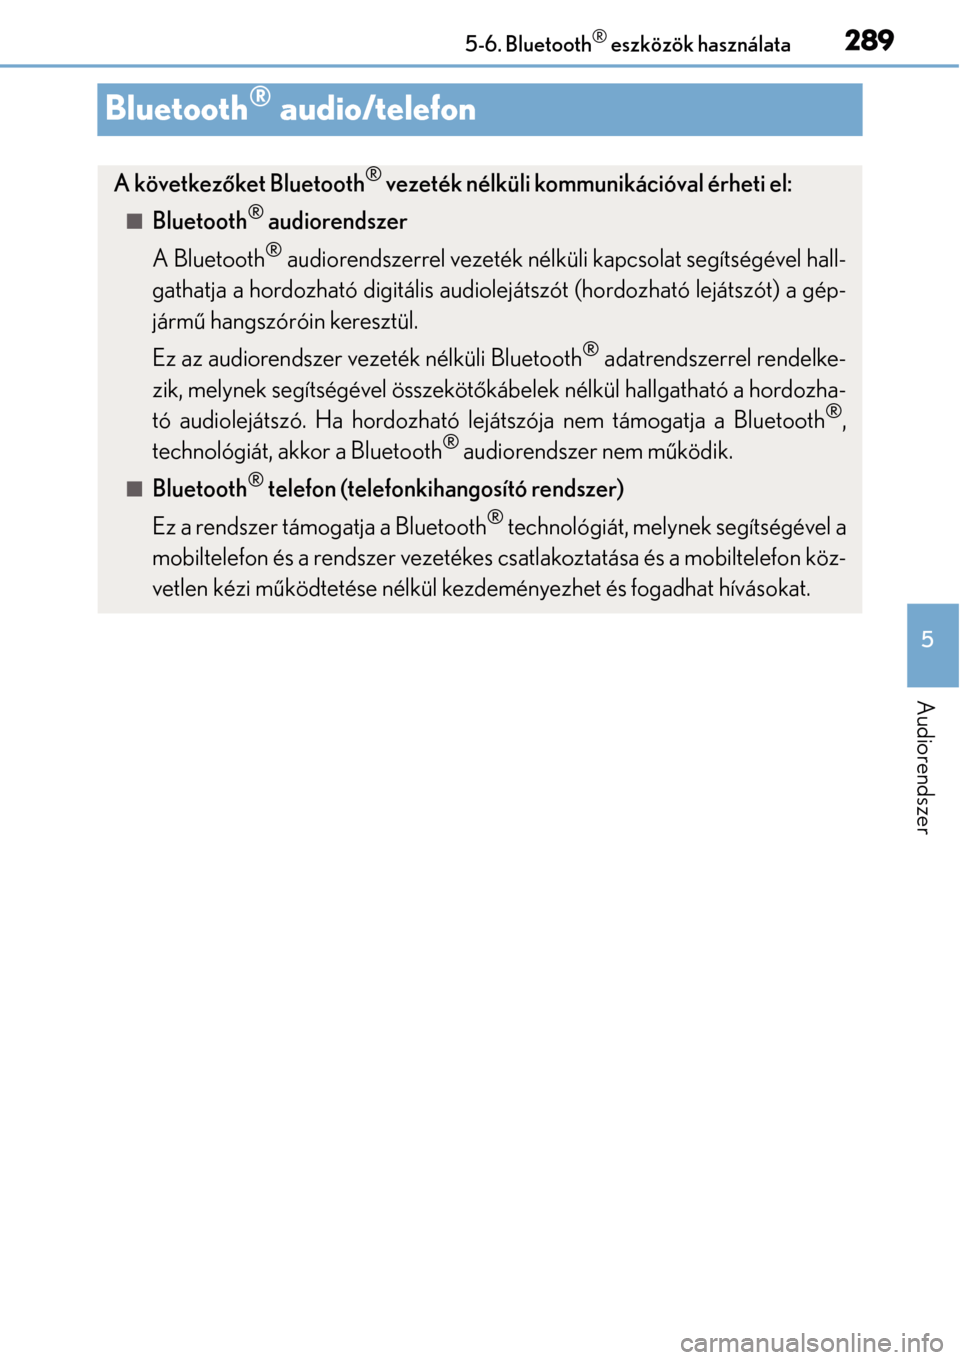 Lexus CT200h 2014  Kezelési útmutató (in Hungarian) 289
5
5-6. Bluetooth
® eszközök használata
Audiorendszer
Bluetooth® audio/telefon
A következ
őket Bluetooth® vezeték nélküli kommunikációval érheti el:
Bluetooth® audiorendszer
A Blu